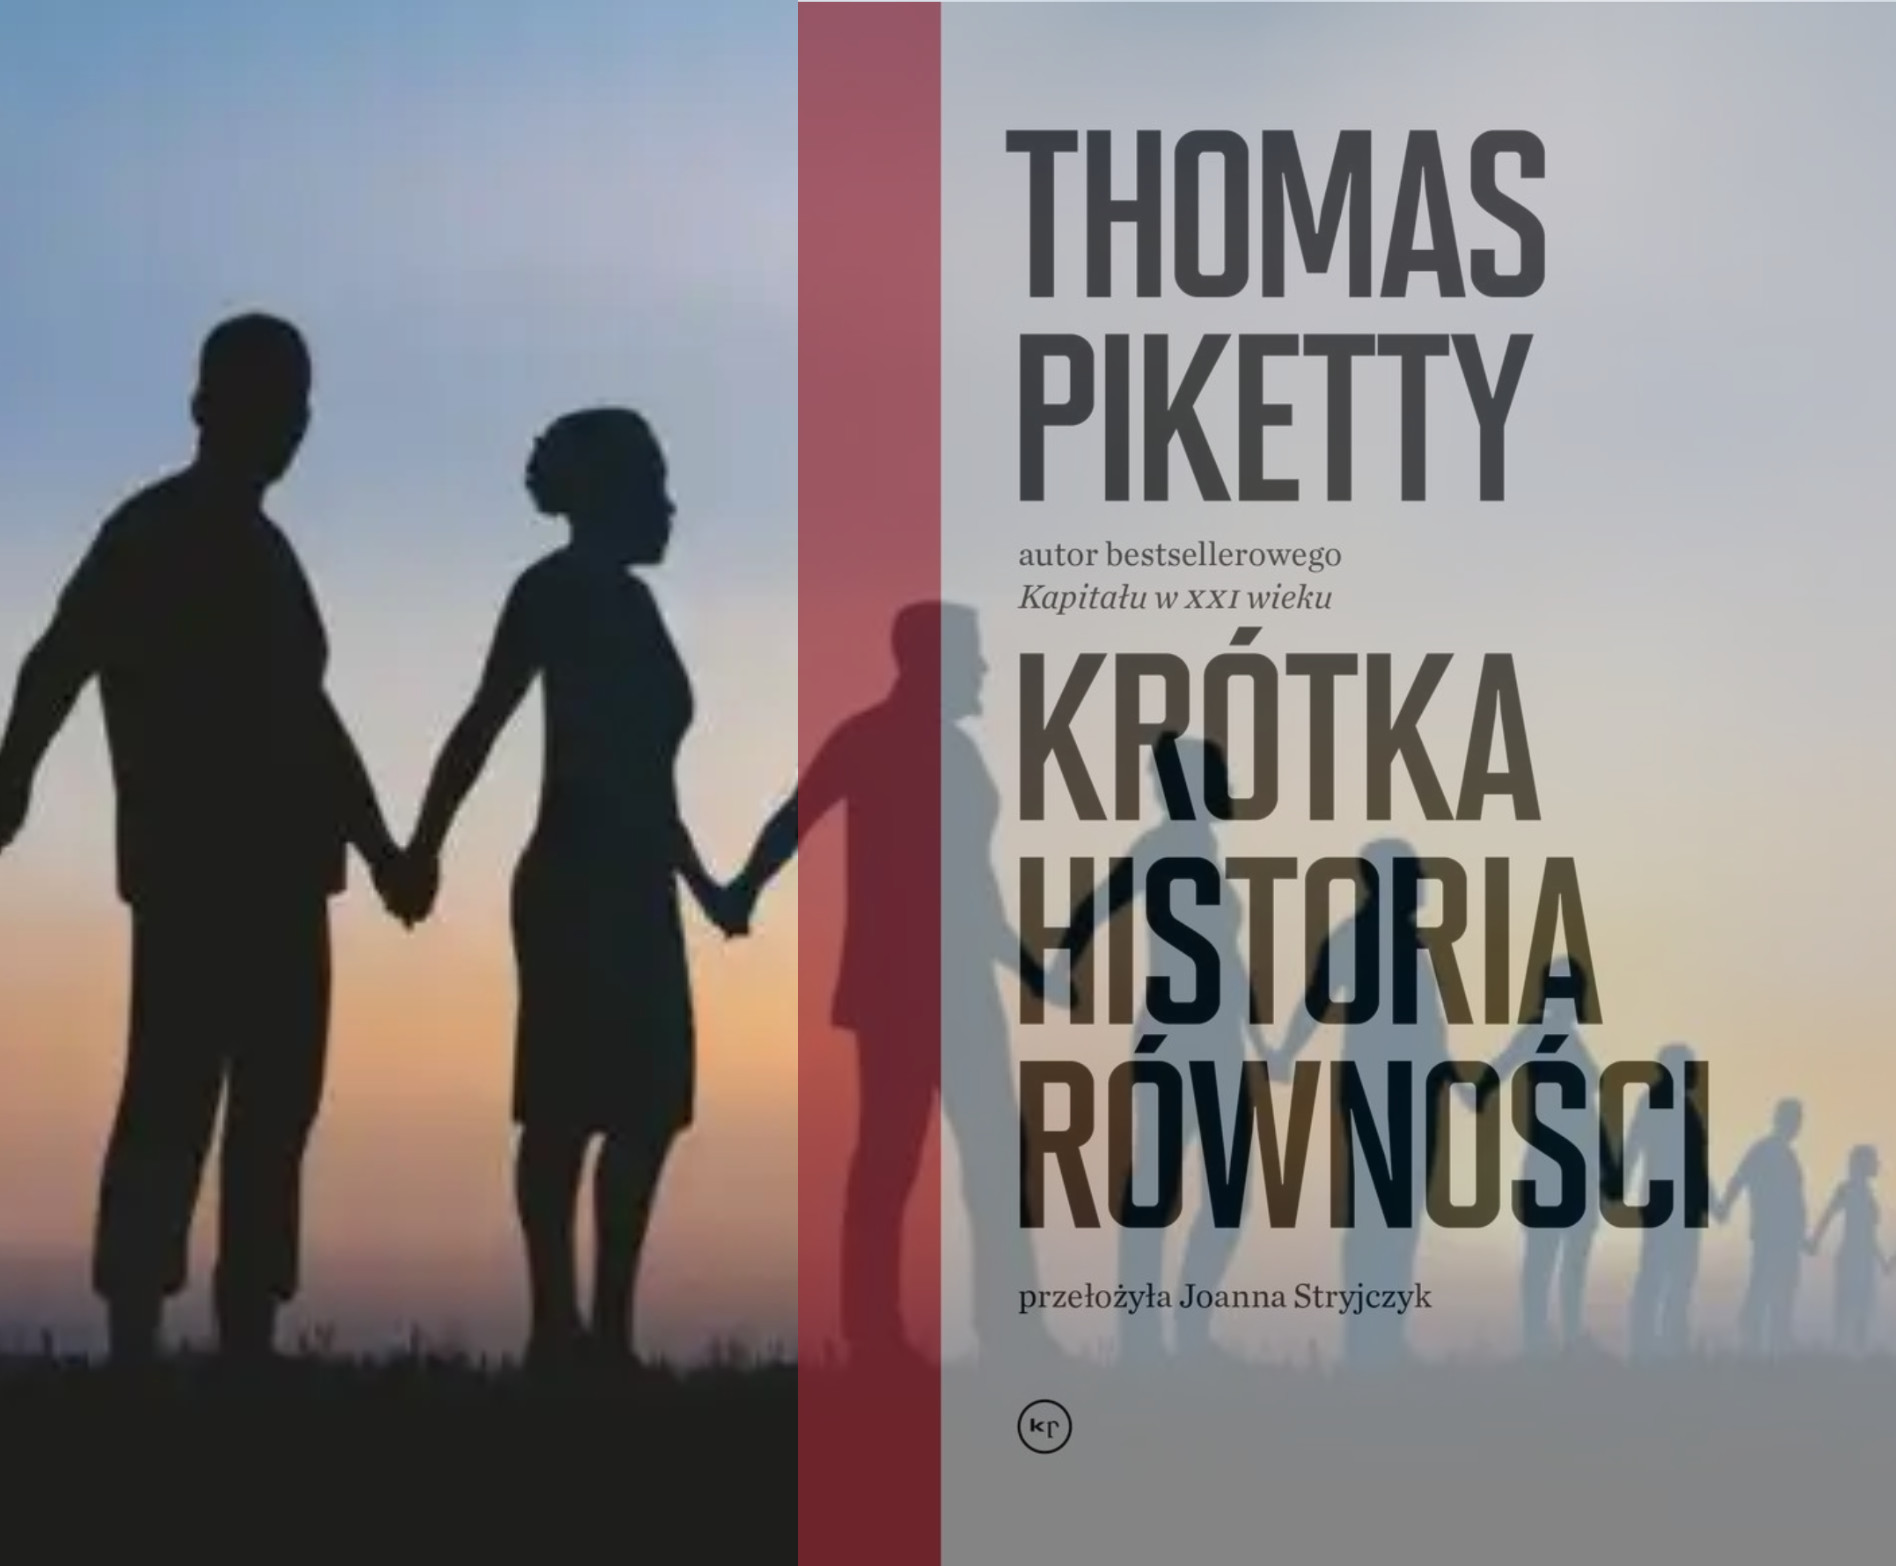 Thomas Piketty. Krótka historia równości